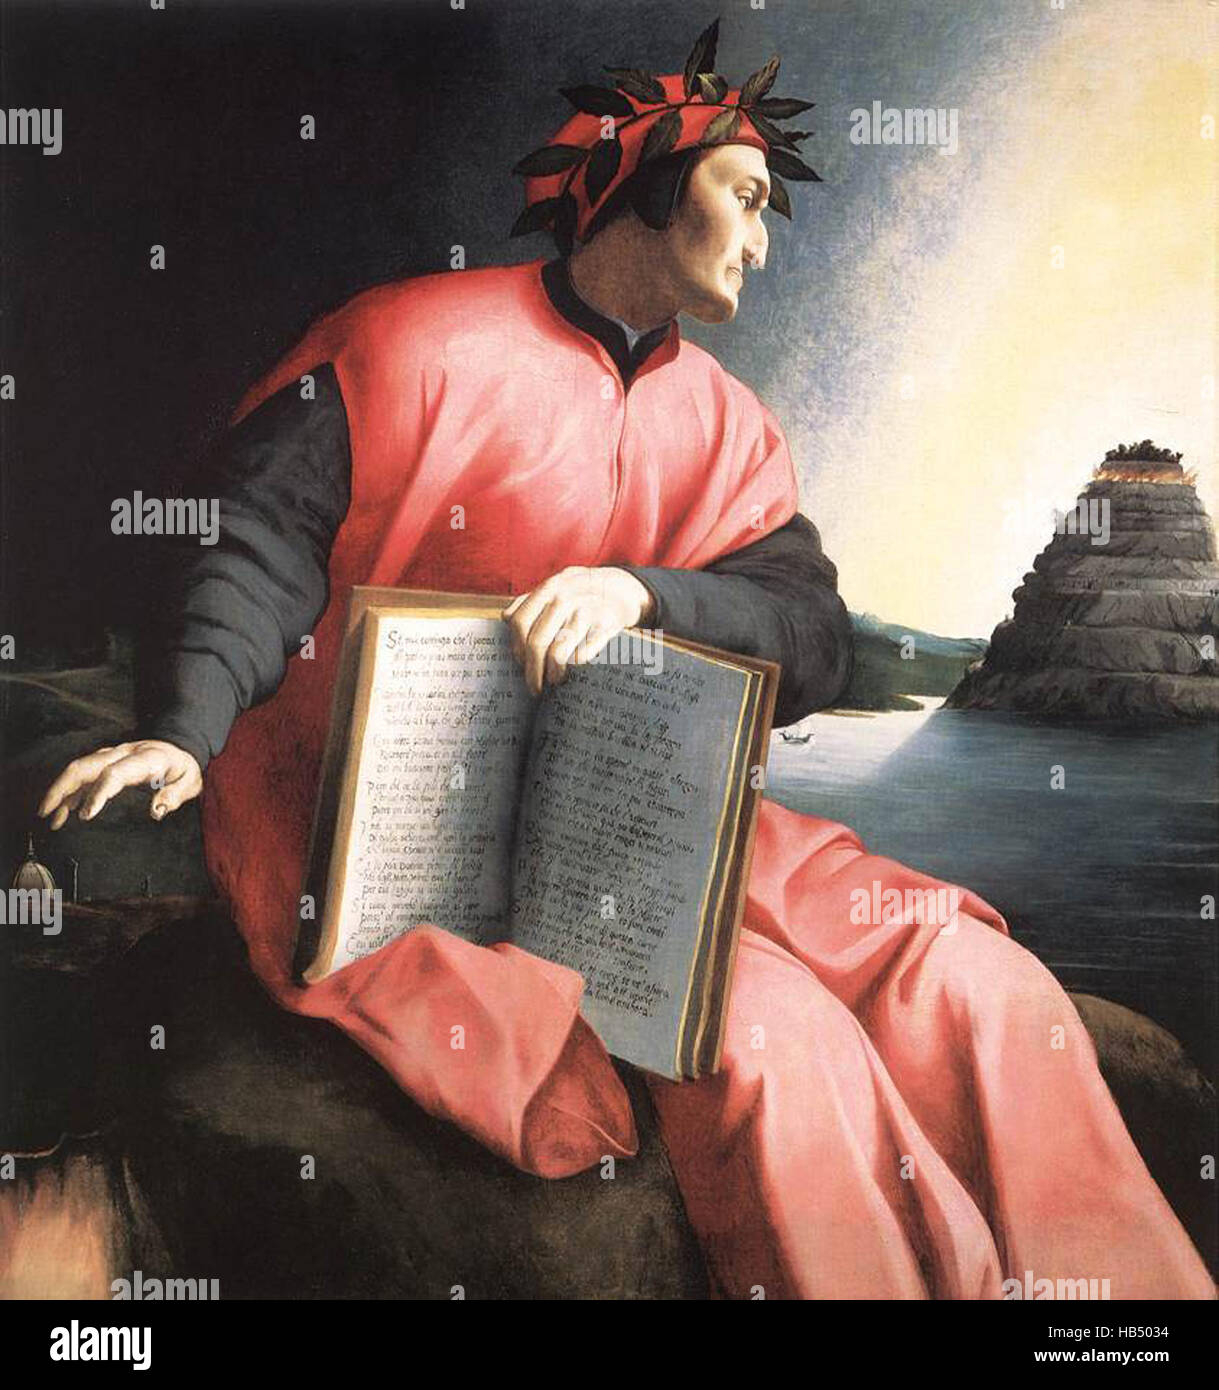 Alegorical portrait de Dante Alighieri, d'Agnolo Bronzino, c. 1530. Le livre qu'il détient est une copie de la Divine Comédie, ouvert à Canto XXV du Paradiso. Durante degli Alighieri, simplement appelé Dante [ch. 1265 - 1321), était un poète italien de la fin du Moyen Âge. Sa Divine Comédie, initialement appelé Comedia (italien moderne : Commedia) et plus tard baptisé Divina par Boccace. Banque D'Images